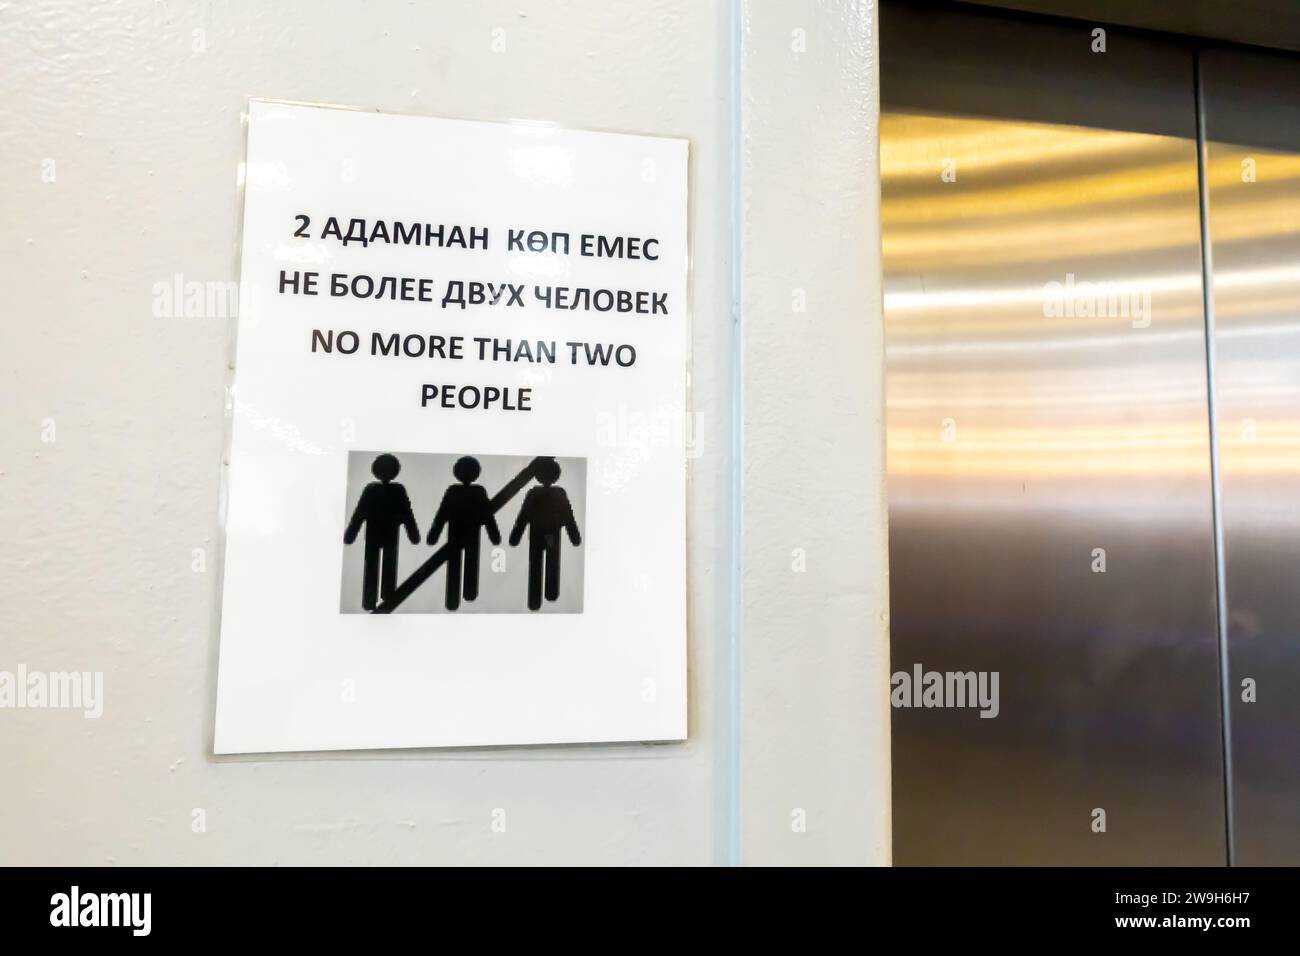 "Nicht mehr als zwei Leute" lächerliches Zeichen, das mehr als zwei Personen in einem Aufzug verbietet. Flughafen Almaty. Lustige Schilder, verboten. Stockfoto